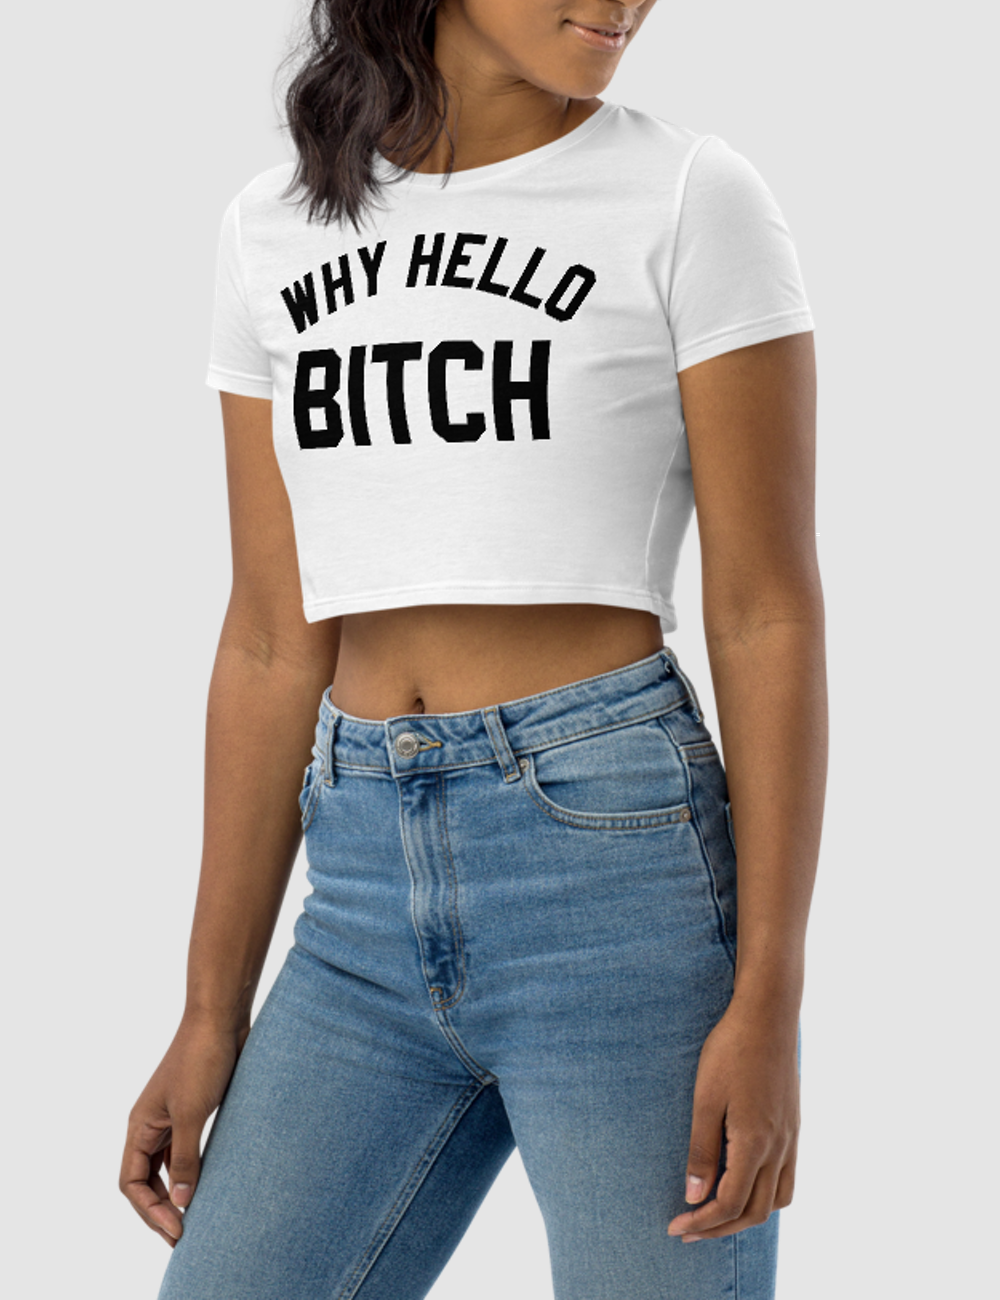 Why Hello Bitch | Women's Crop Top T-Shirt OniTakai